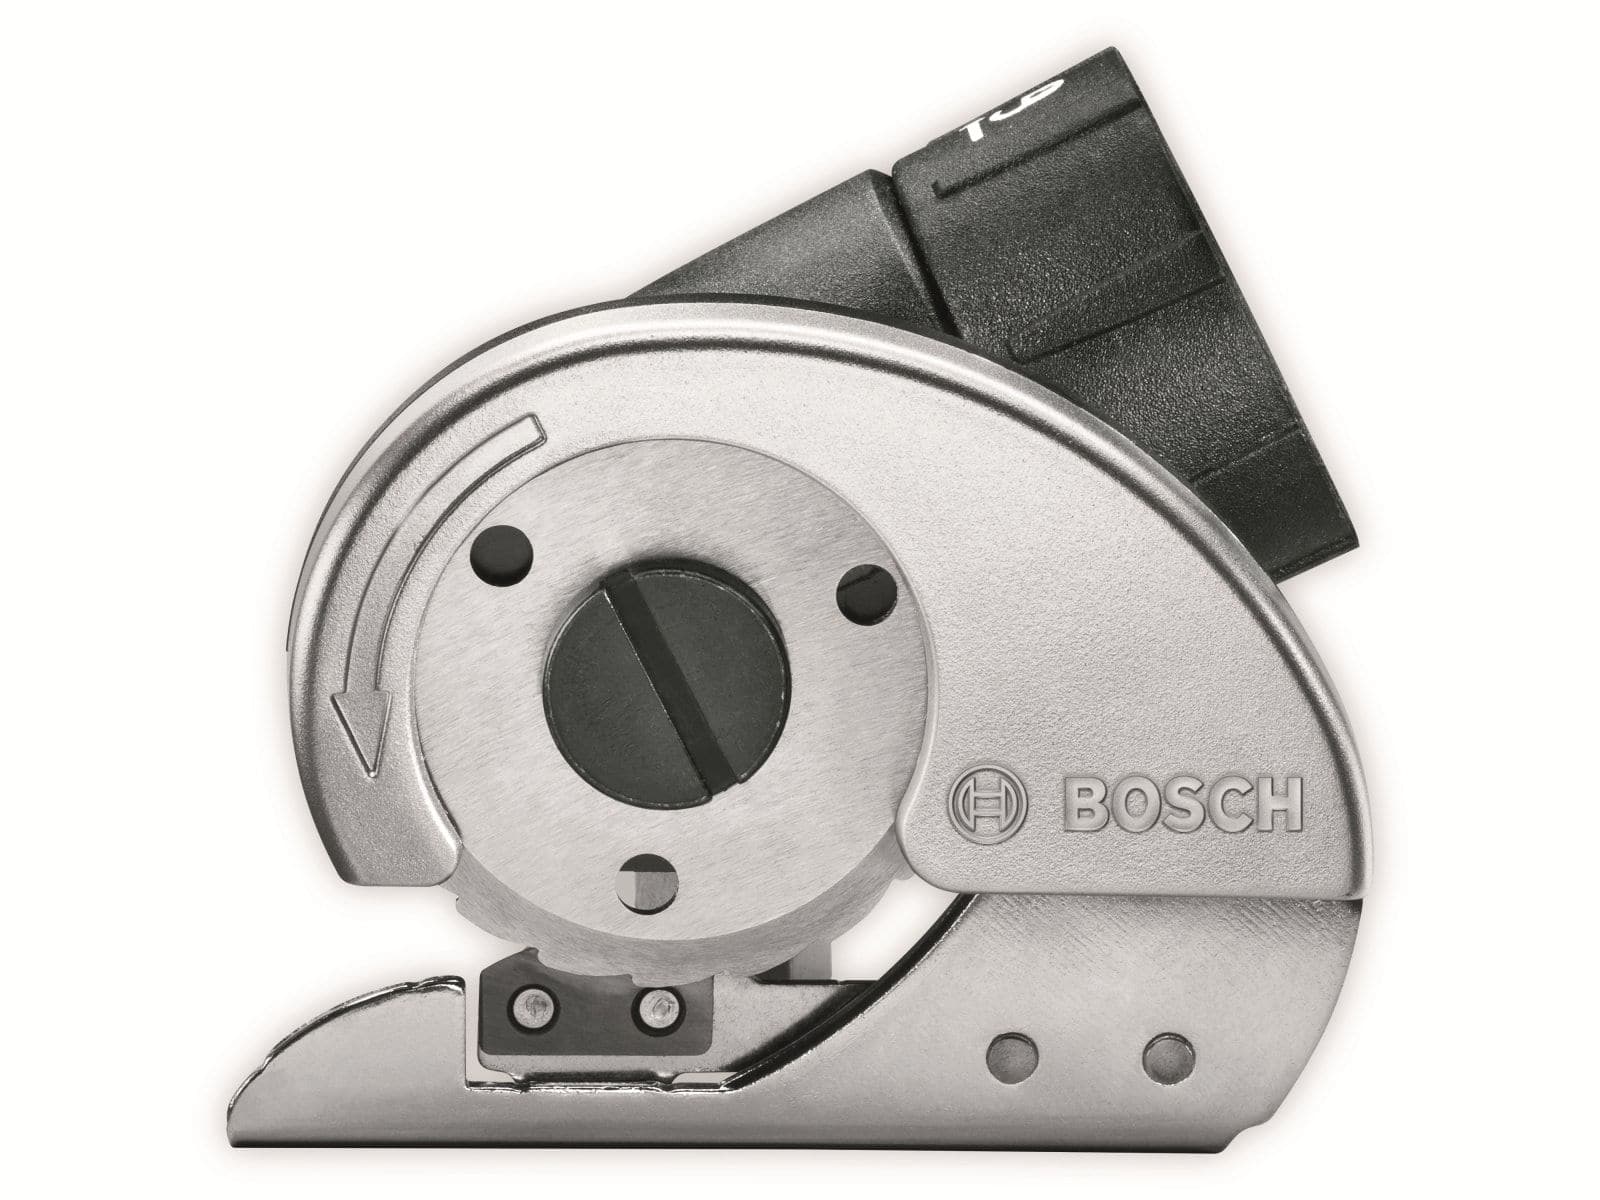 BOSCH Universalschneideaufsatz für Akkuschrauber IXO von Bosch